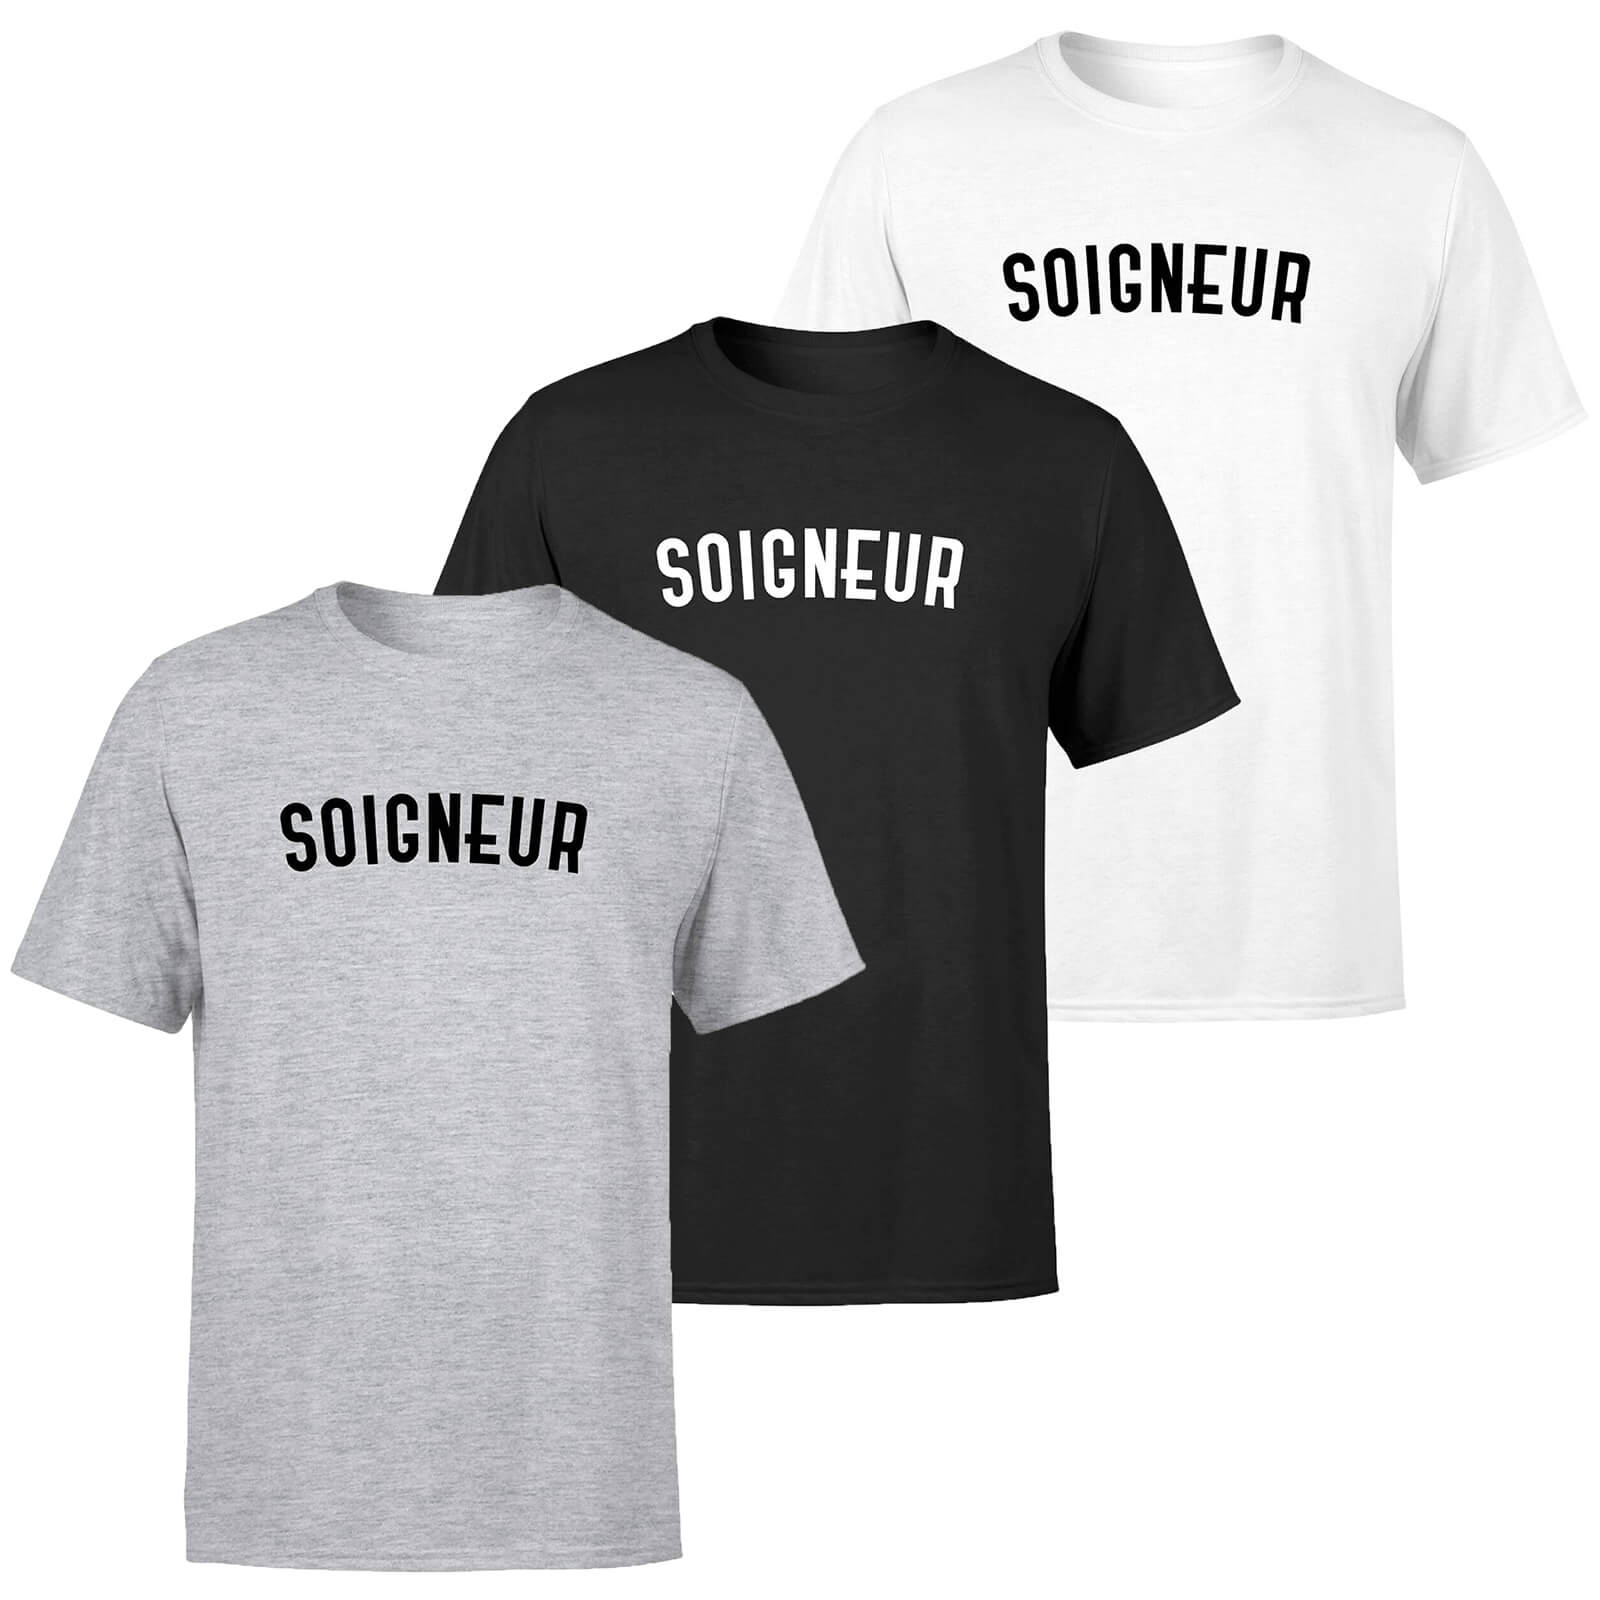 Soigneur Men's T-Shirt - XL - Schwarz